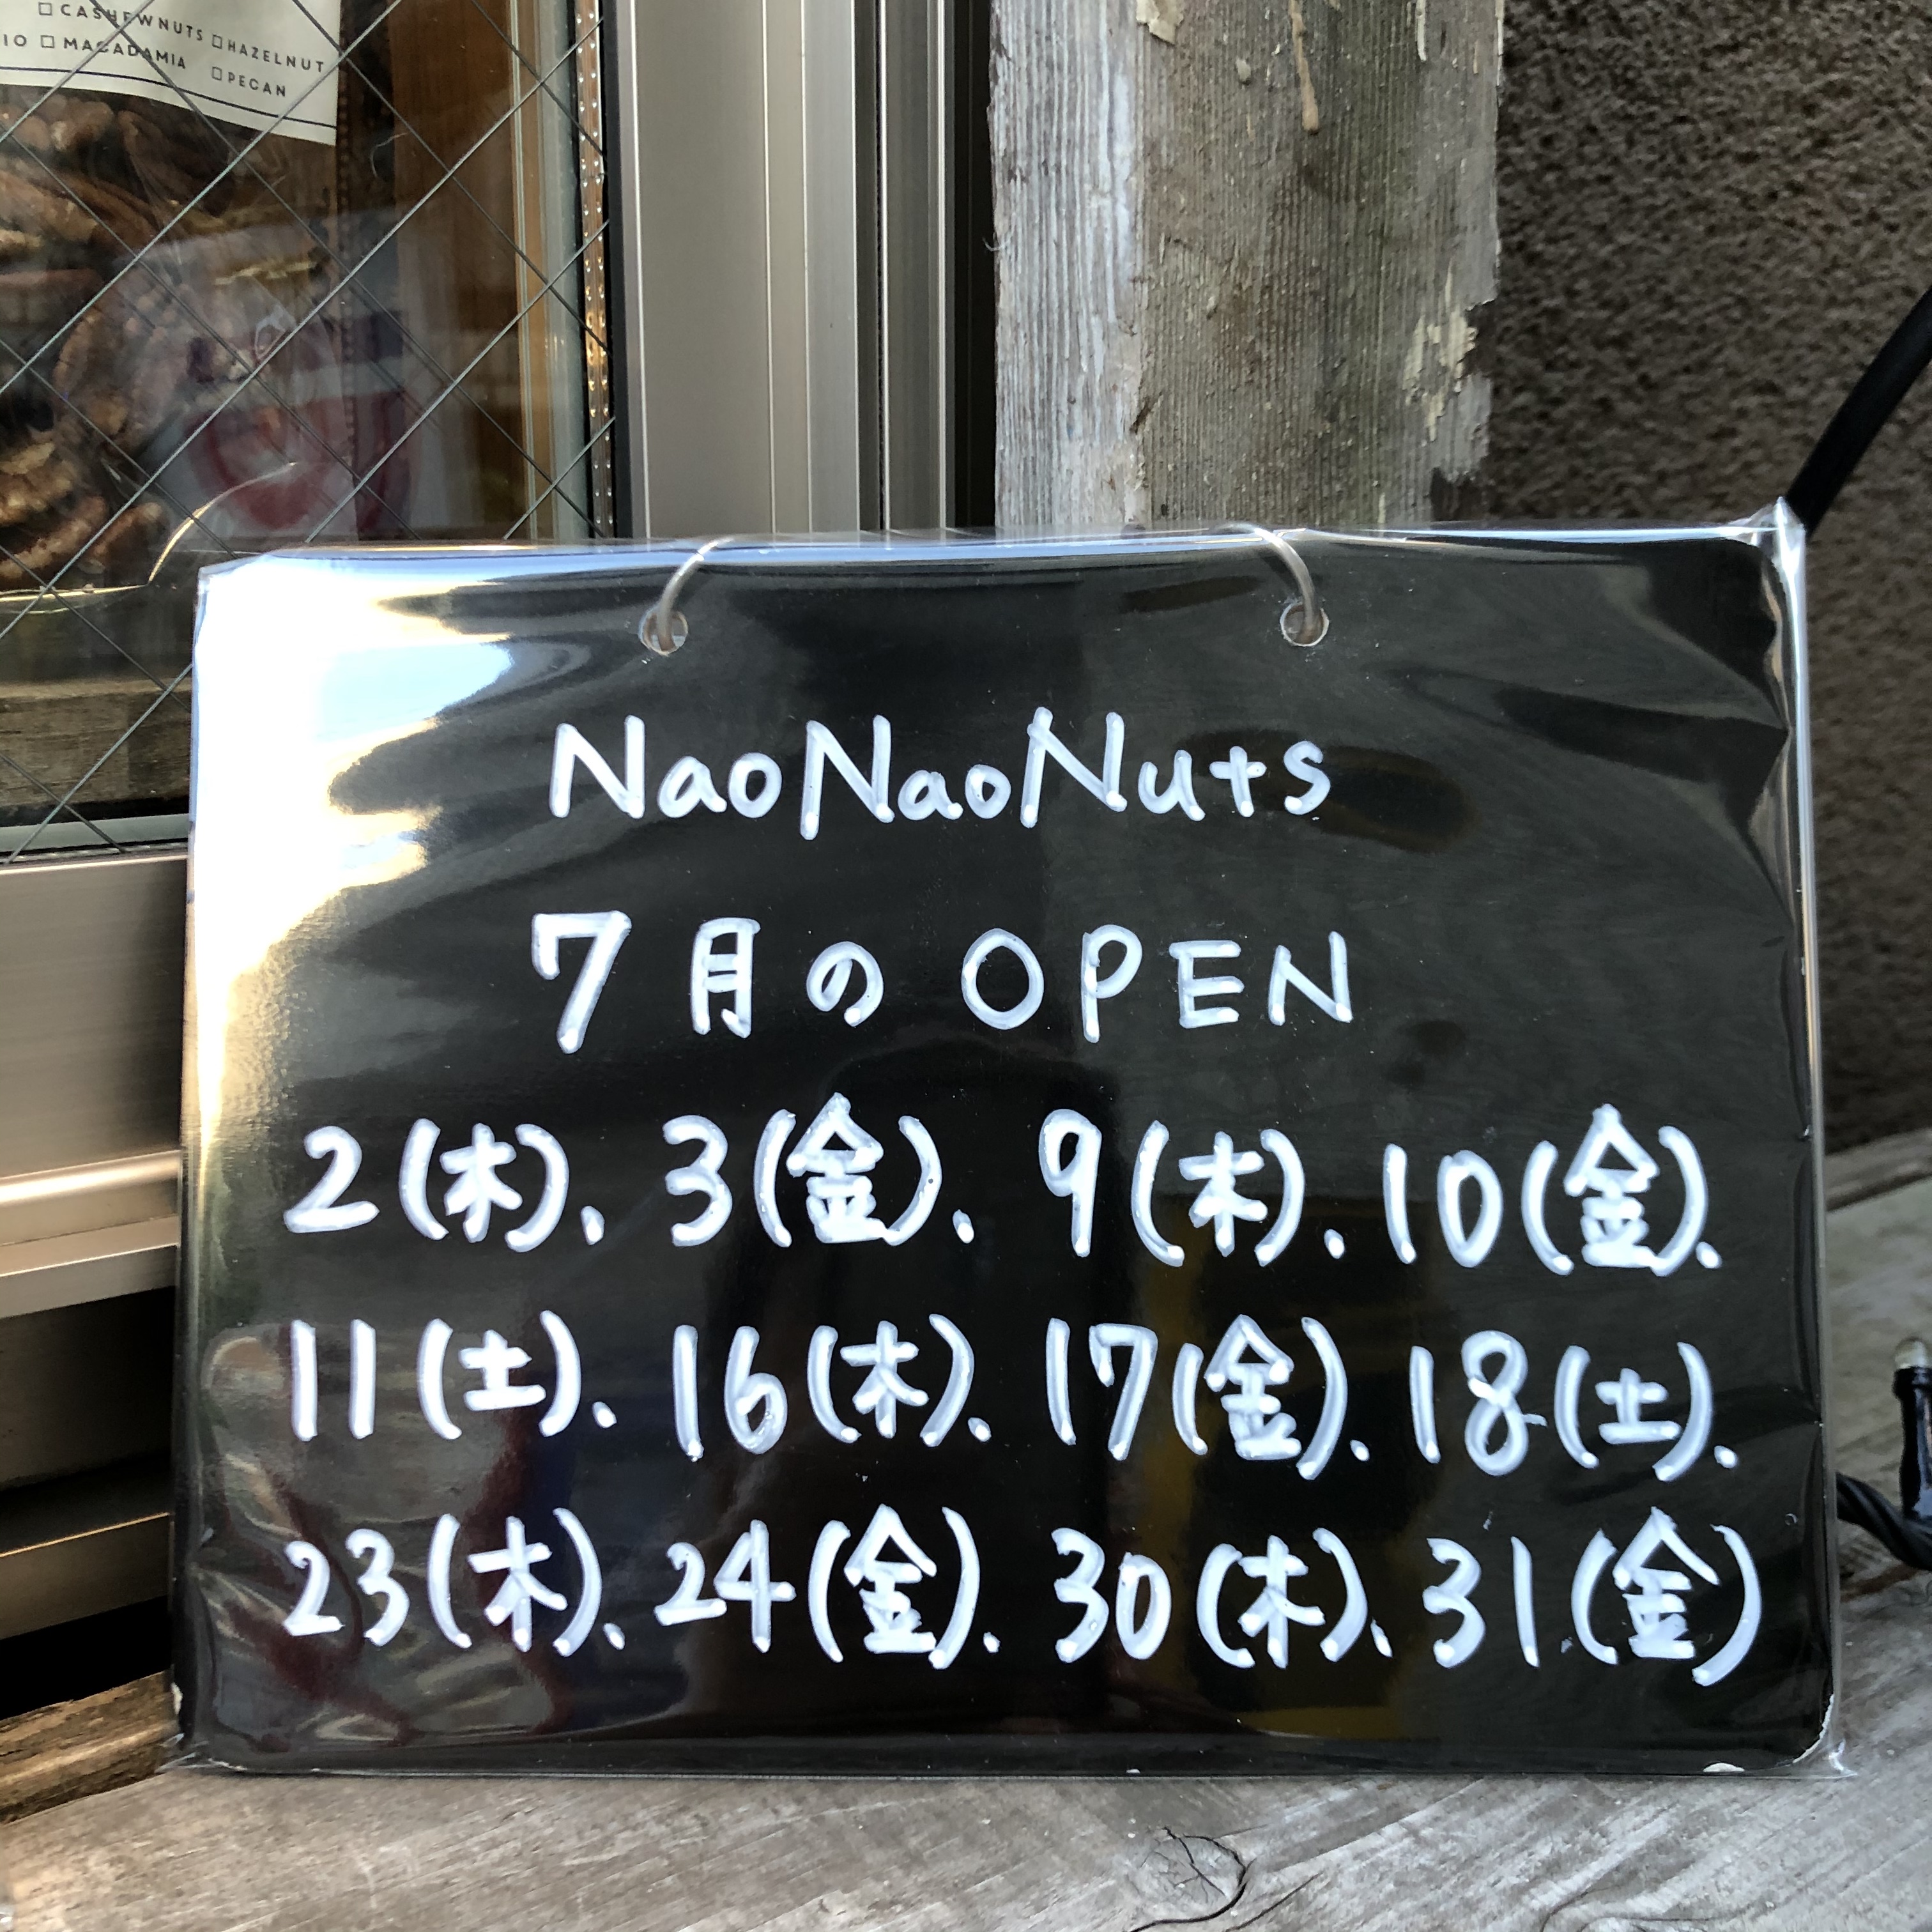 7/9(木)、10(金)、11(土) NaoNaoNuts オープンします